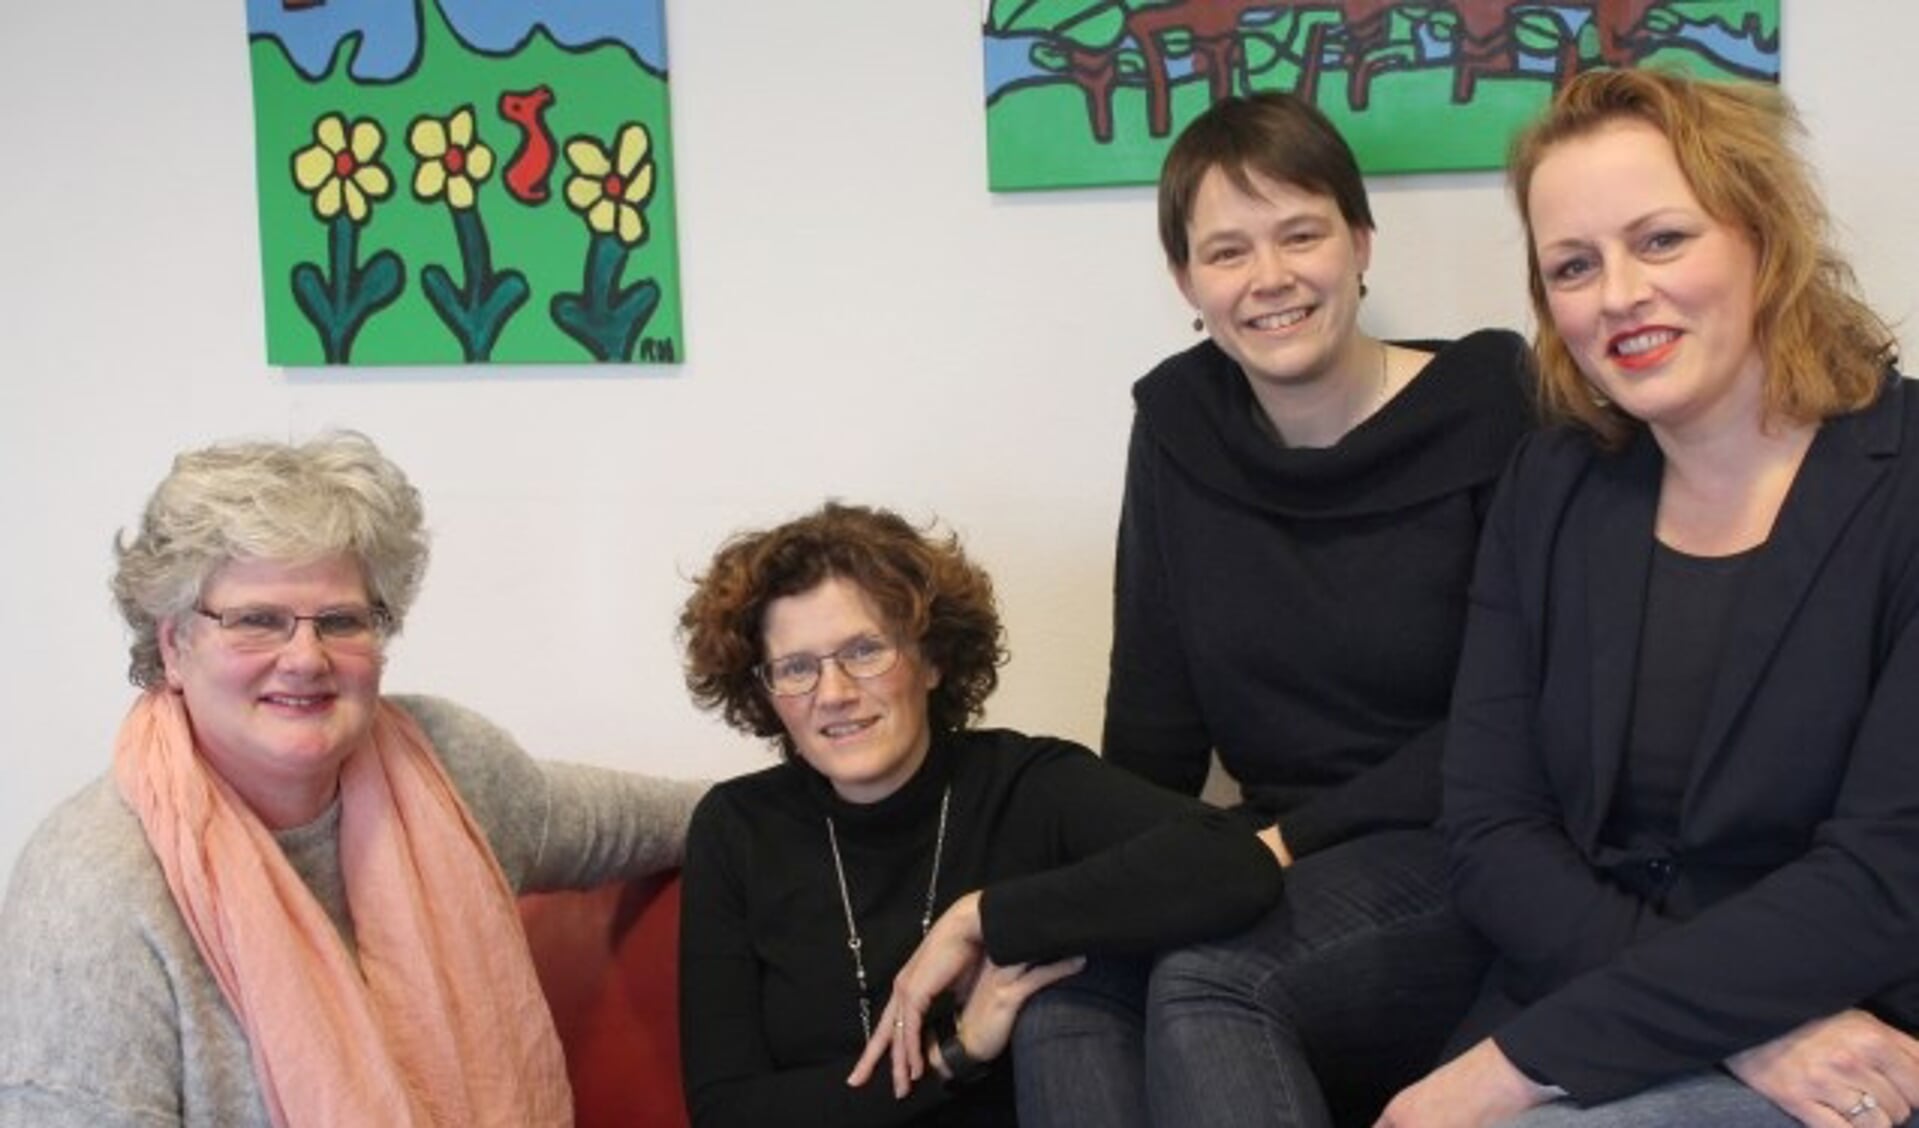 Alie Tigchelhof, Marijke van Beukering, Els Kooij en Saskia van Dijk nemen deel aan het Politiek Café op Internationale vrouwendag. FOTO: Lysette Verwegen